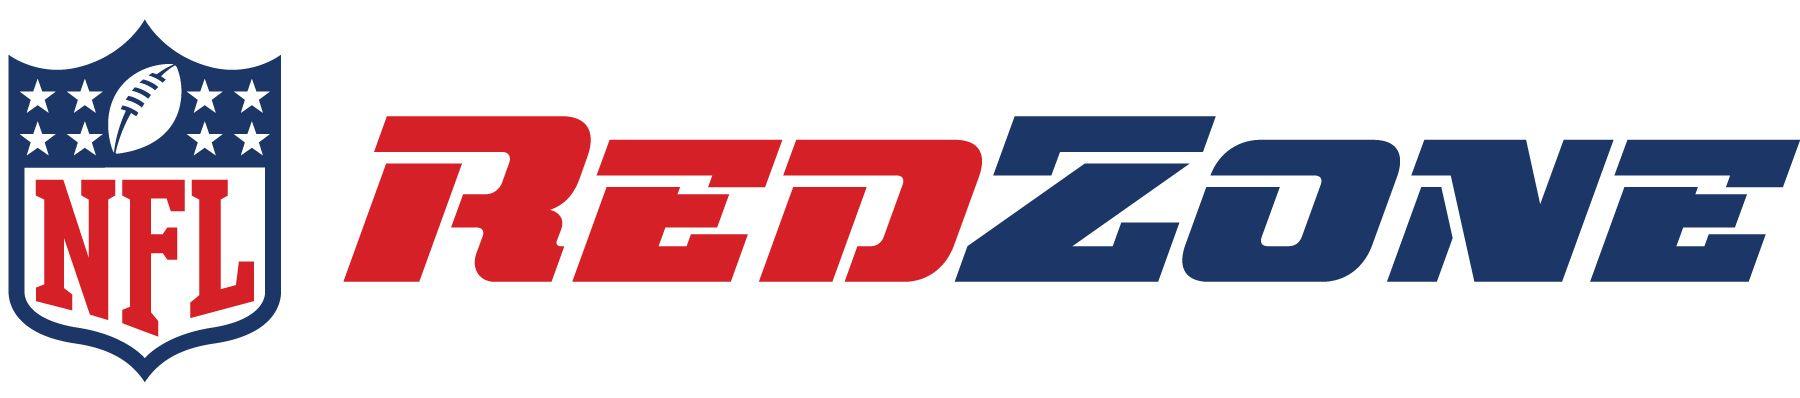 NFL RedZone Logo - BEK Communications - NFL RedZone